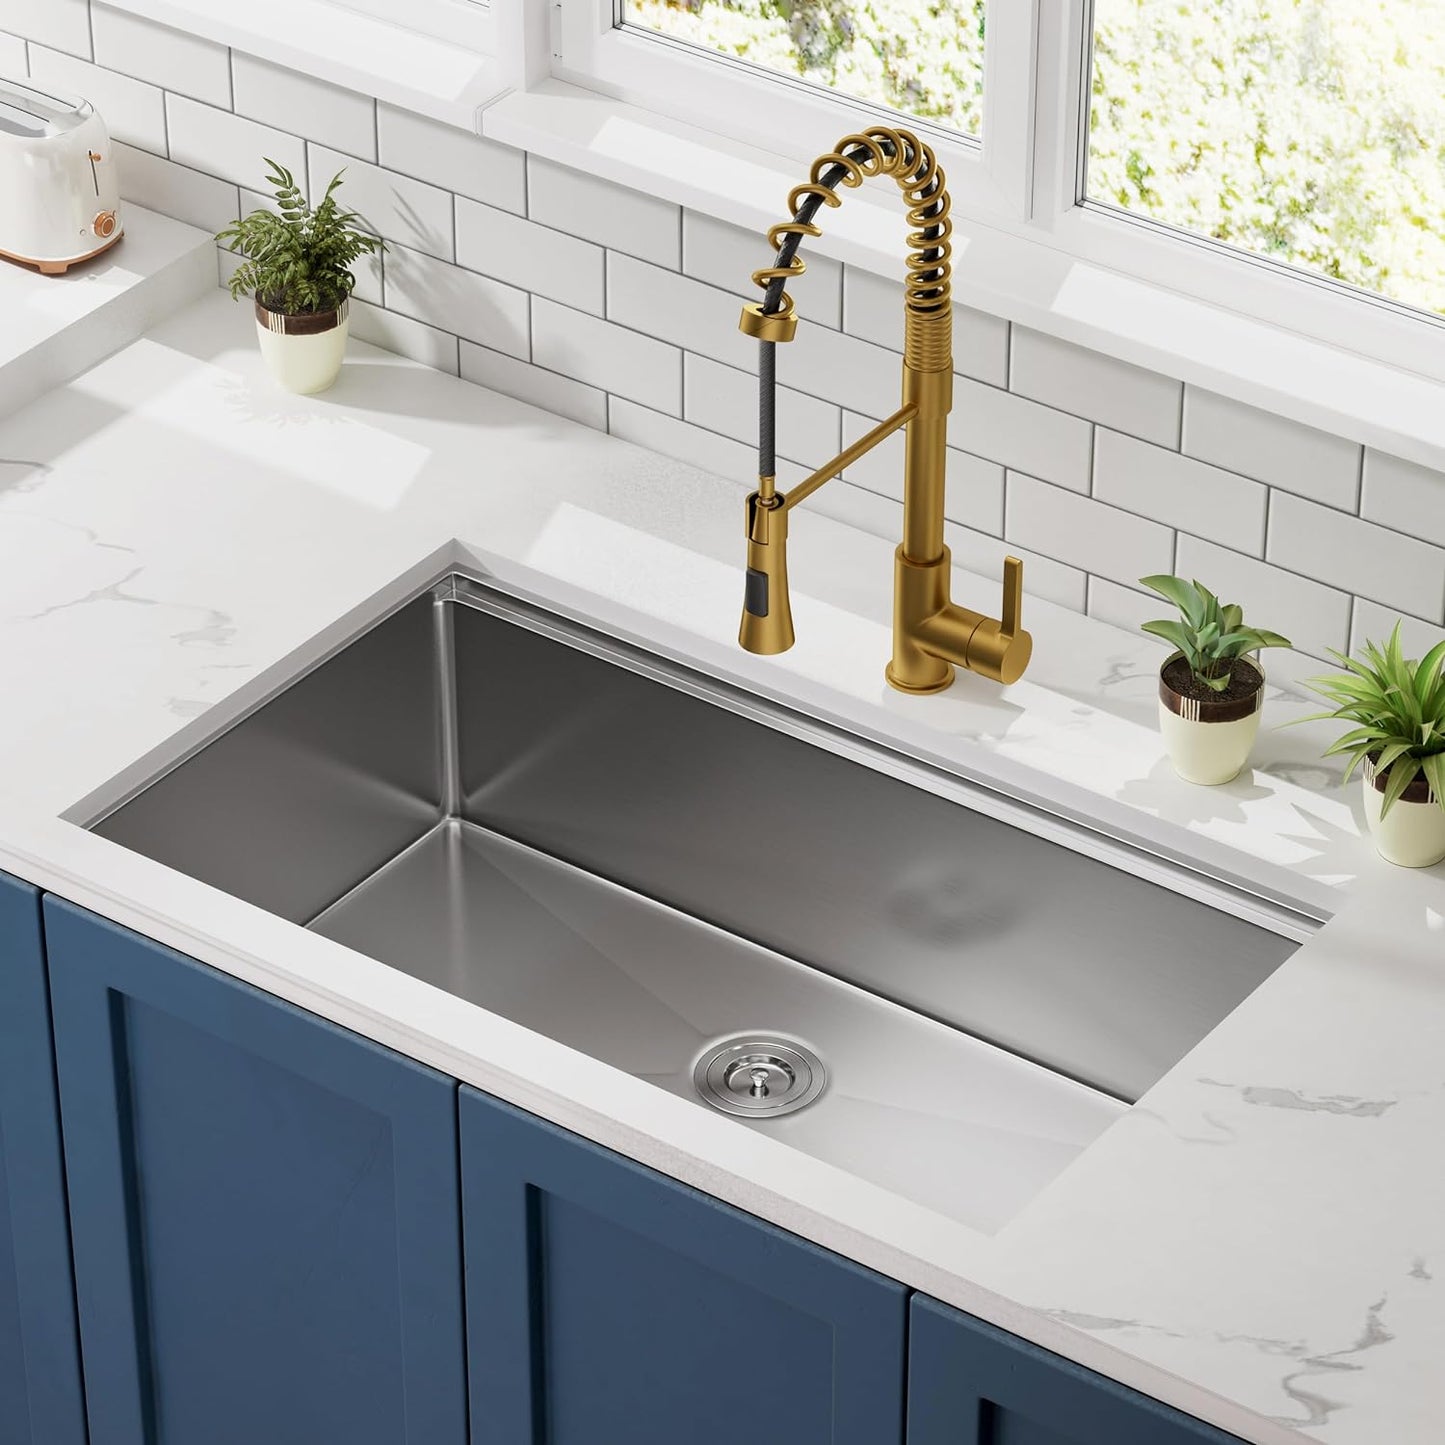 33"x19" Inch Undermount Kitchen Sink, 18 Gauge Single Bowl Stainless Steel Kitchen Sink